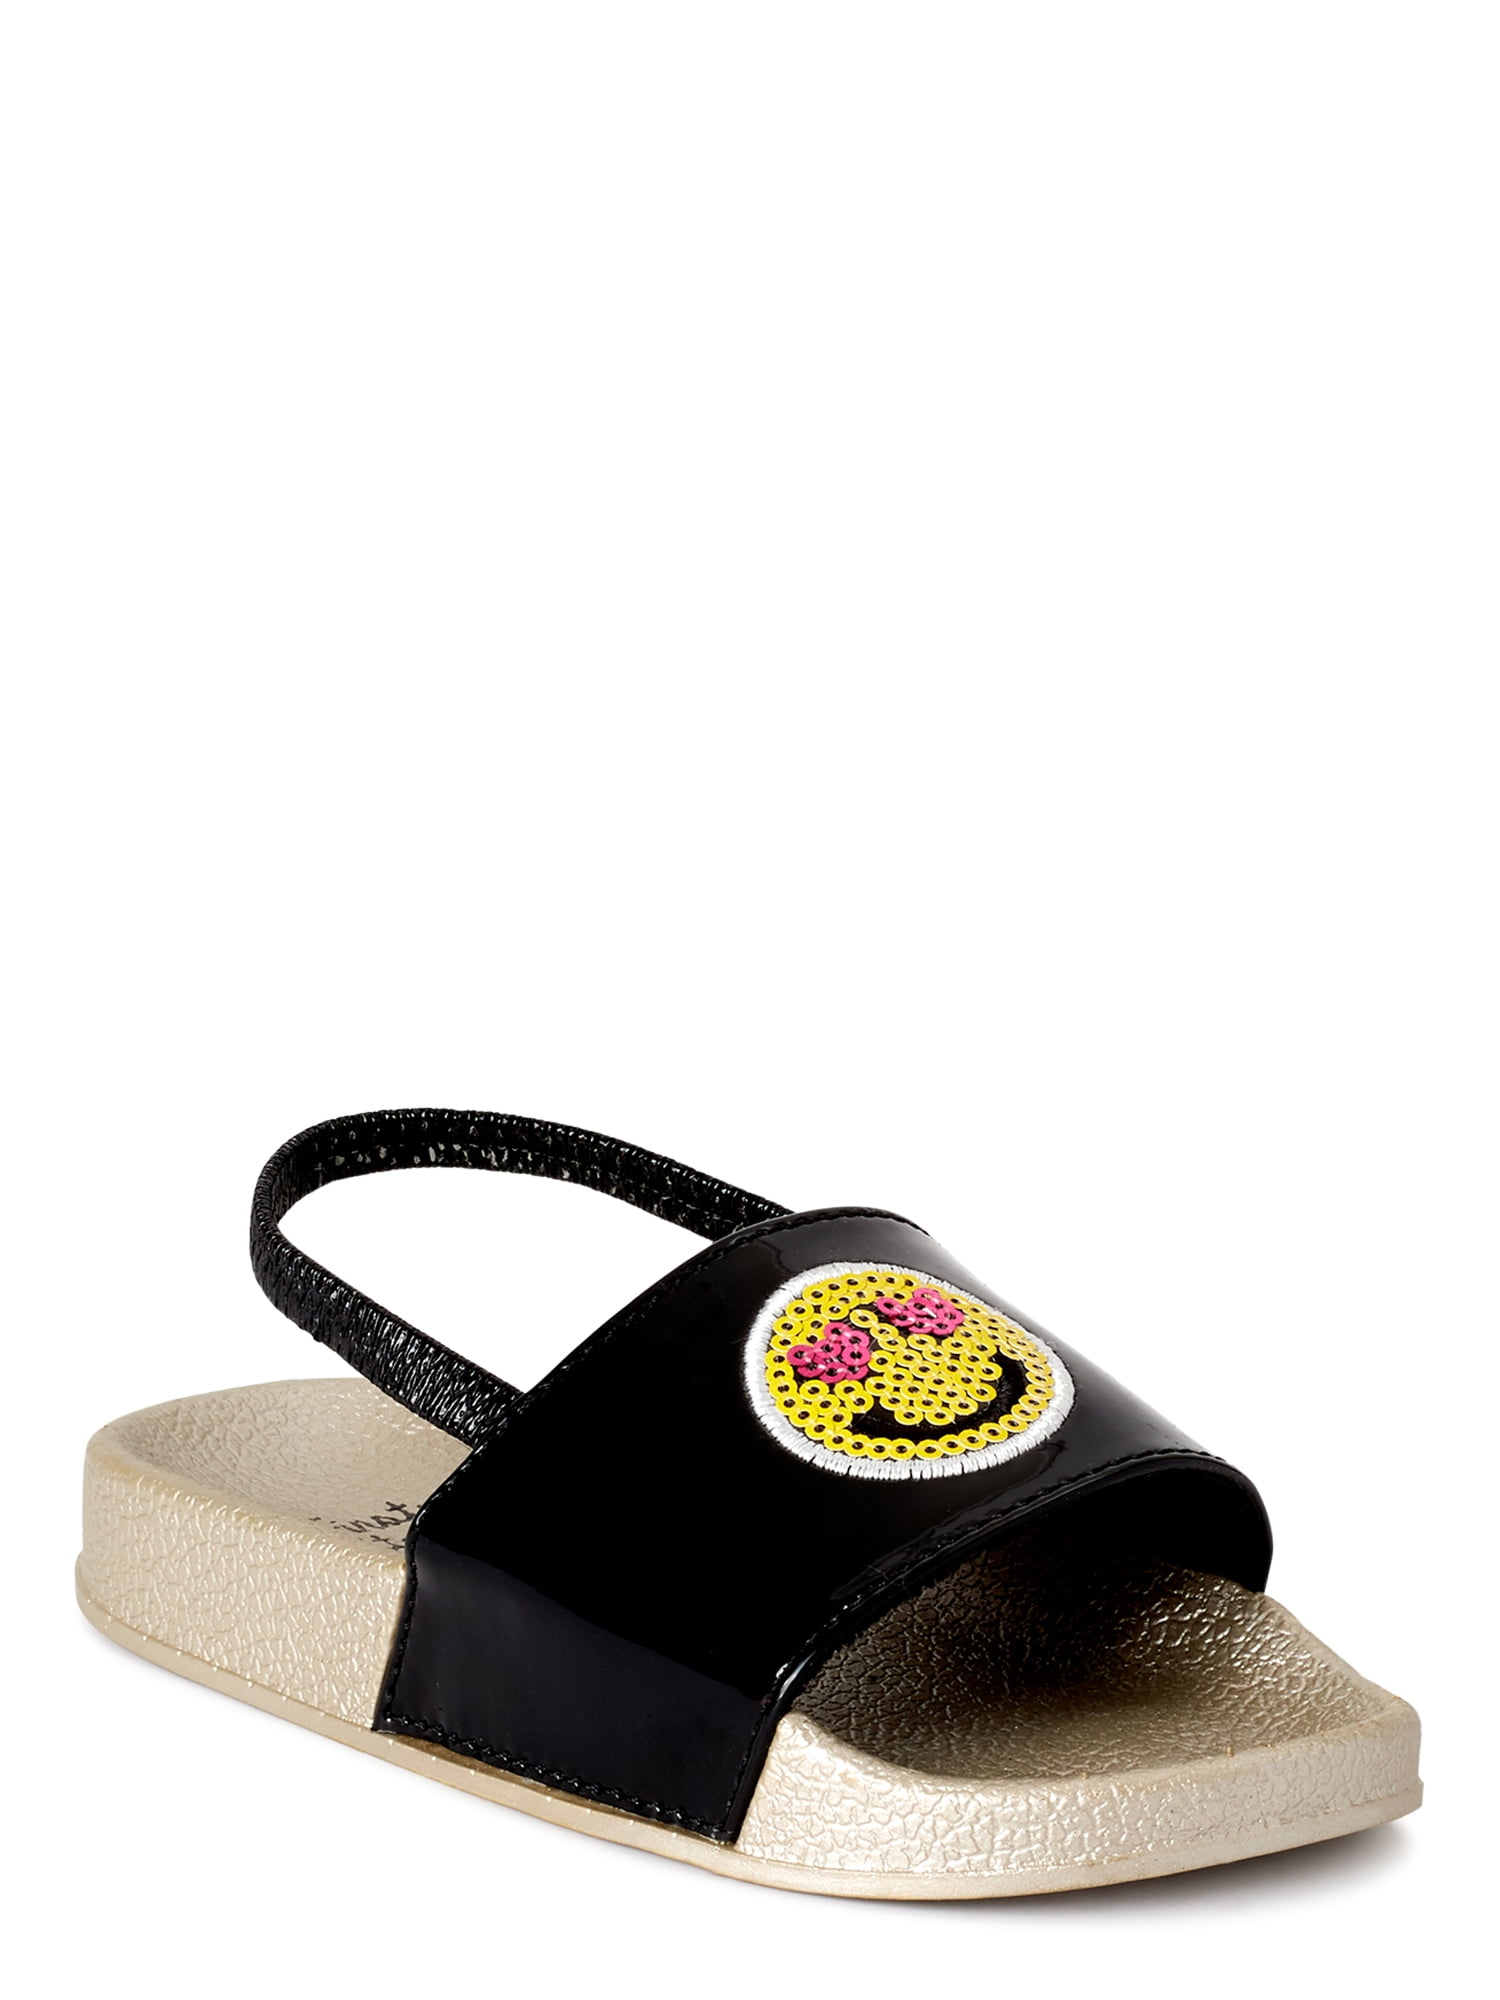 toddler slide sandals with backstrap